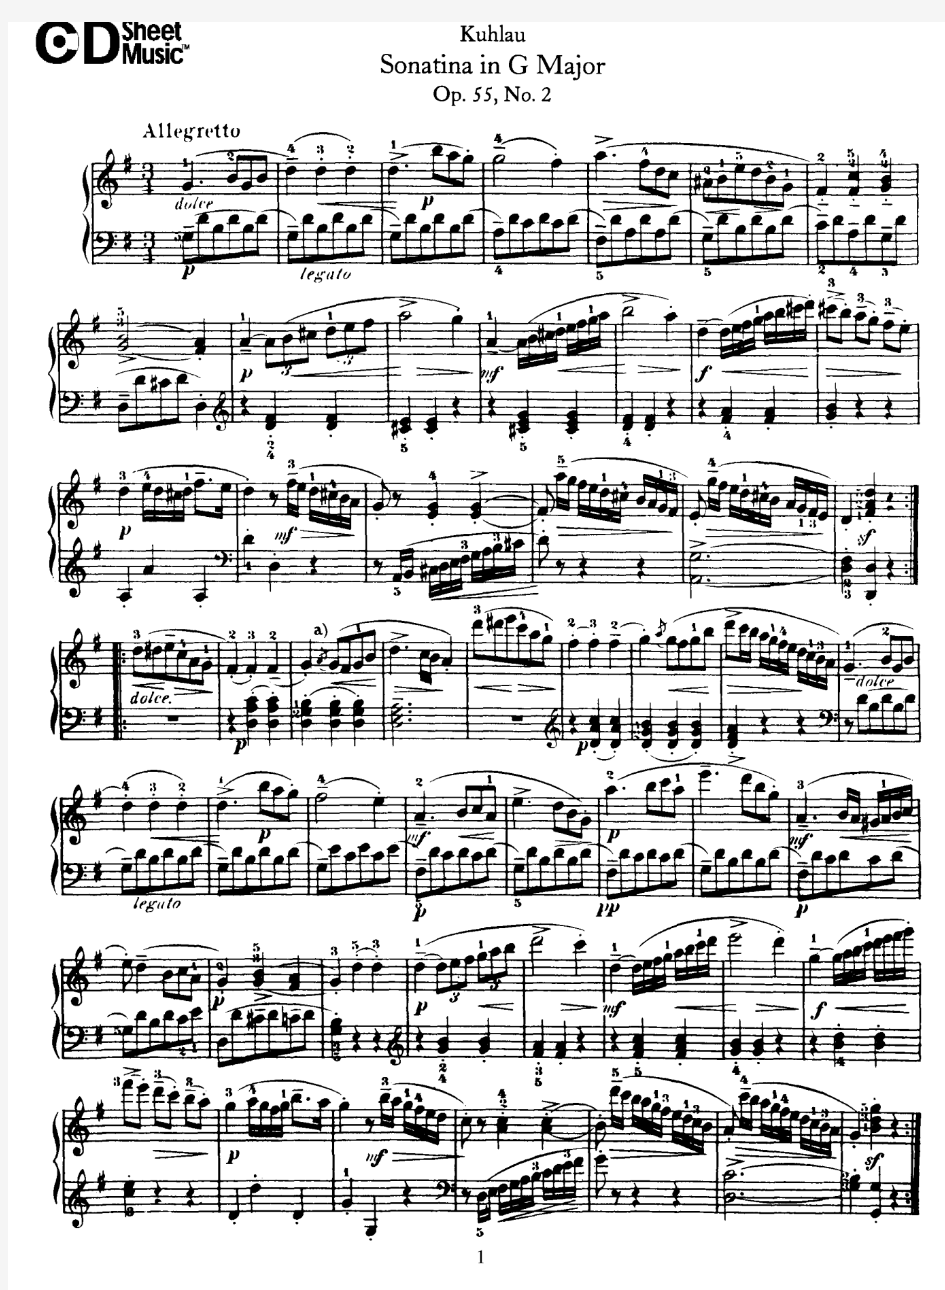 Op.55-2库劳小奏鸣曲作品55之2